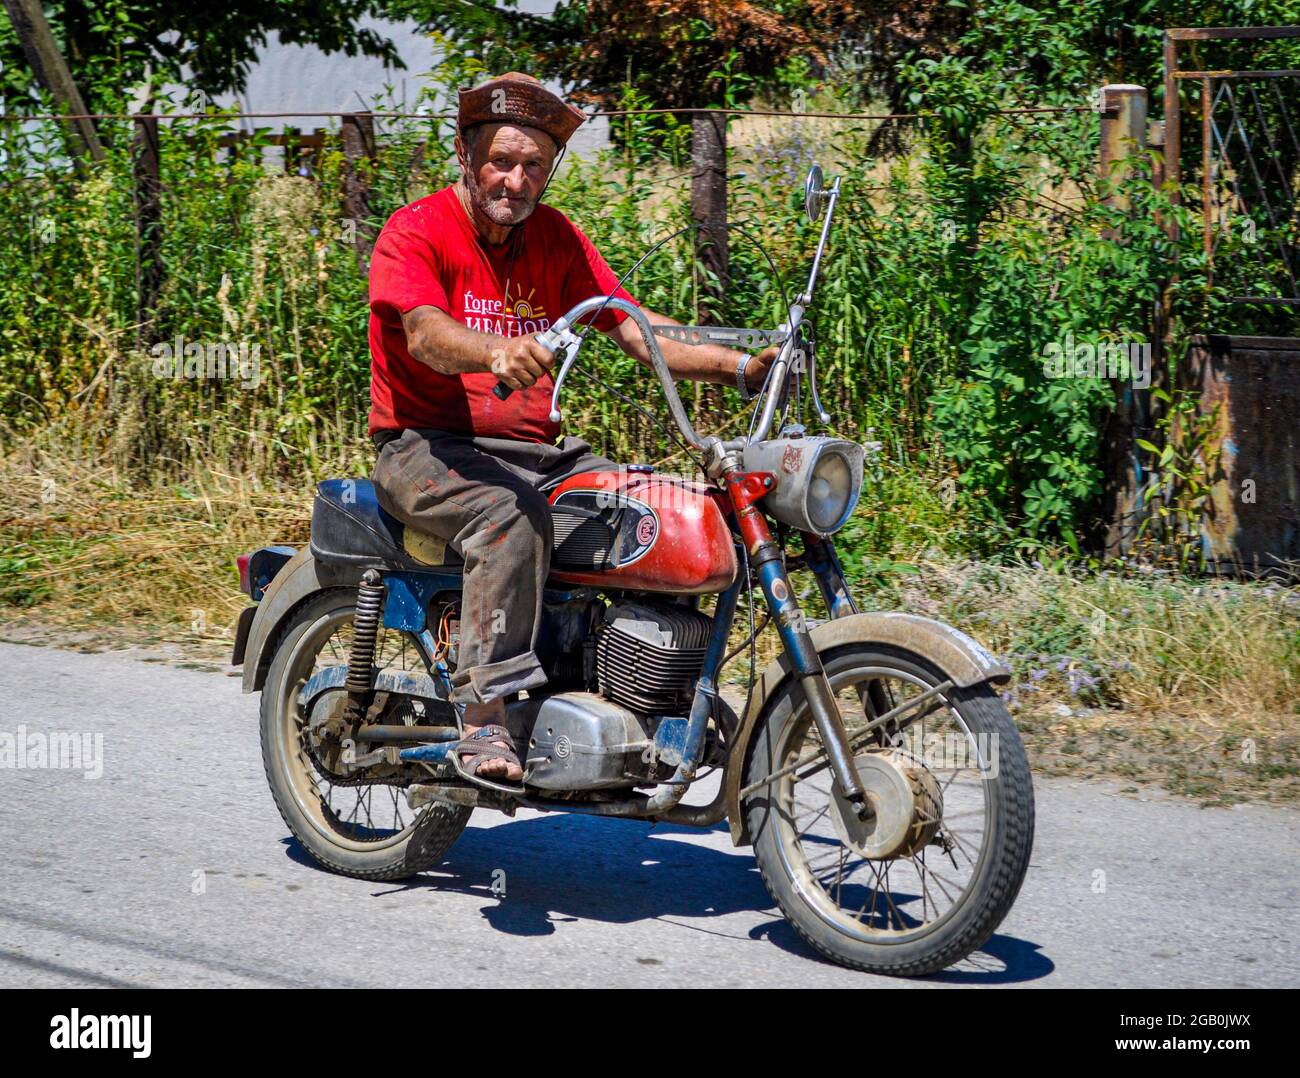 Motocycliste avec chapeau sur une vieille moto sur une route de campagne Banque D'Images